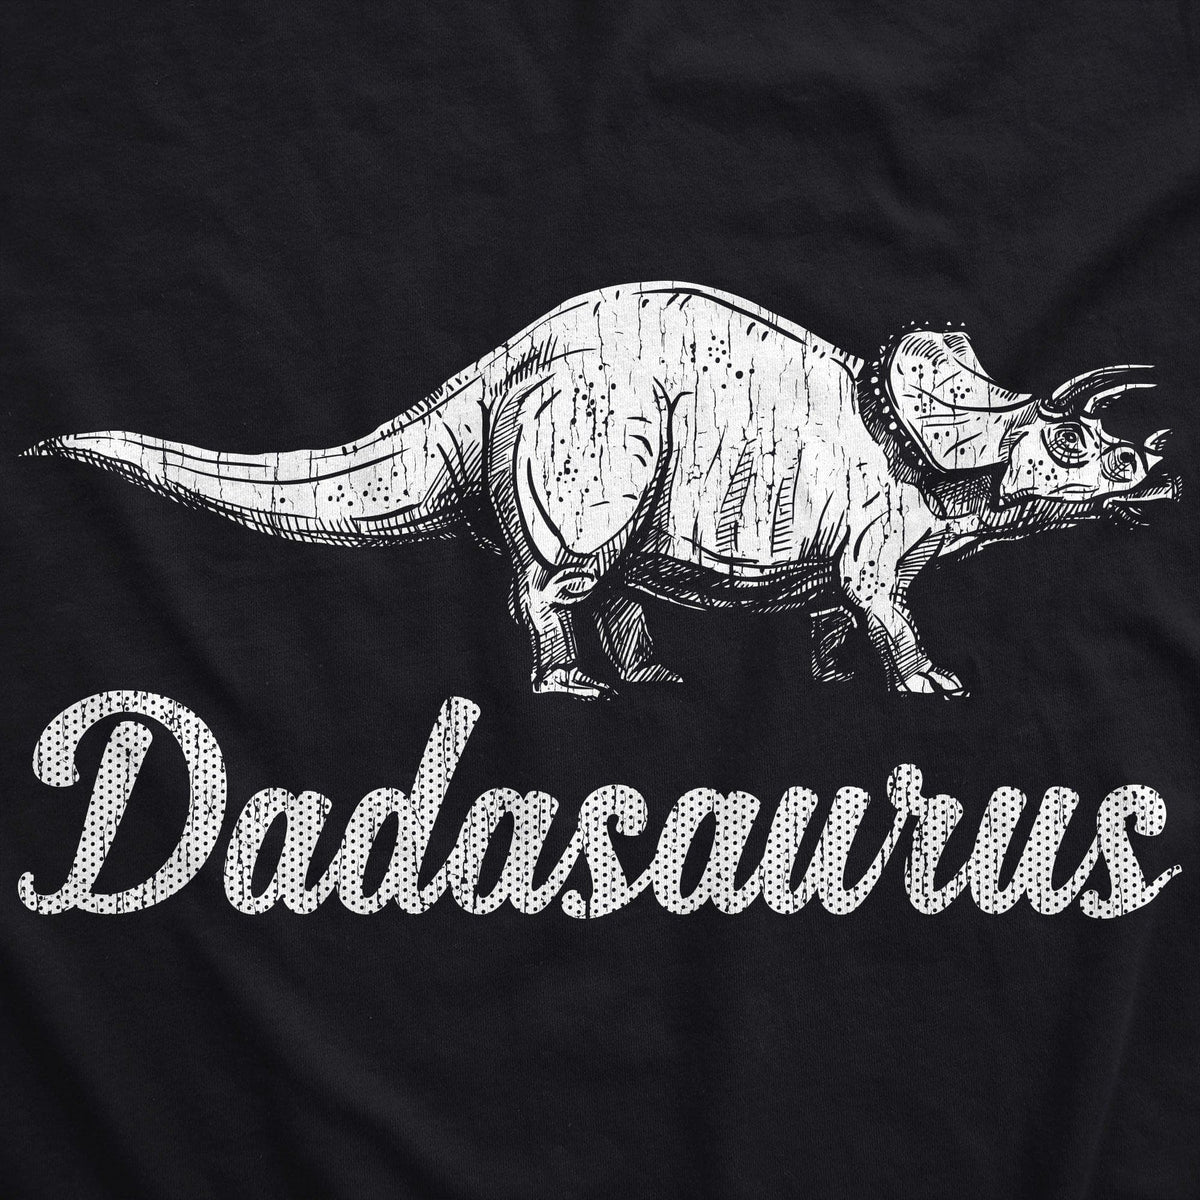 Dadasaurus Cookout Apron - Crazy Dog T-Shirts